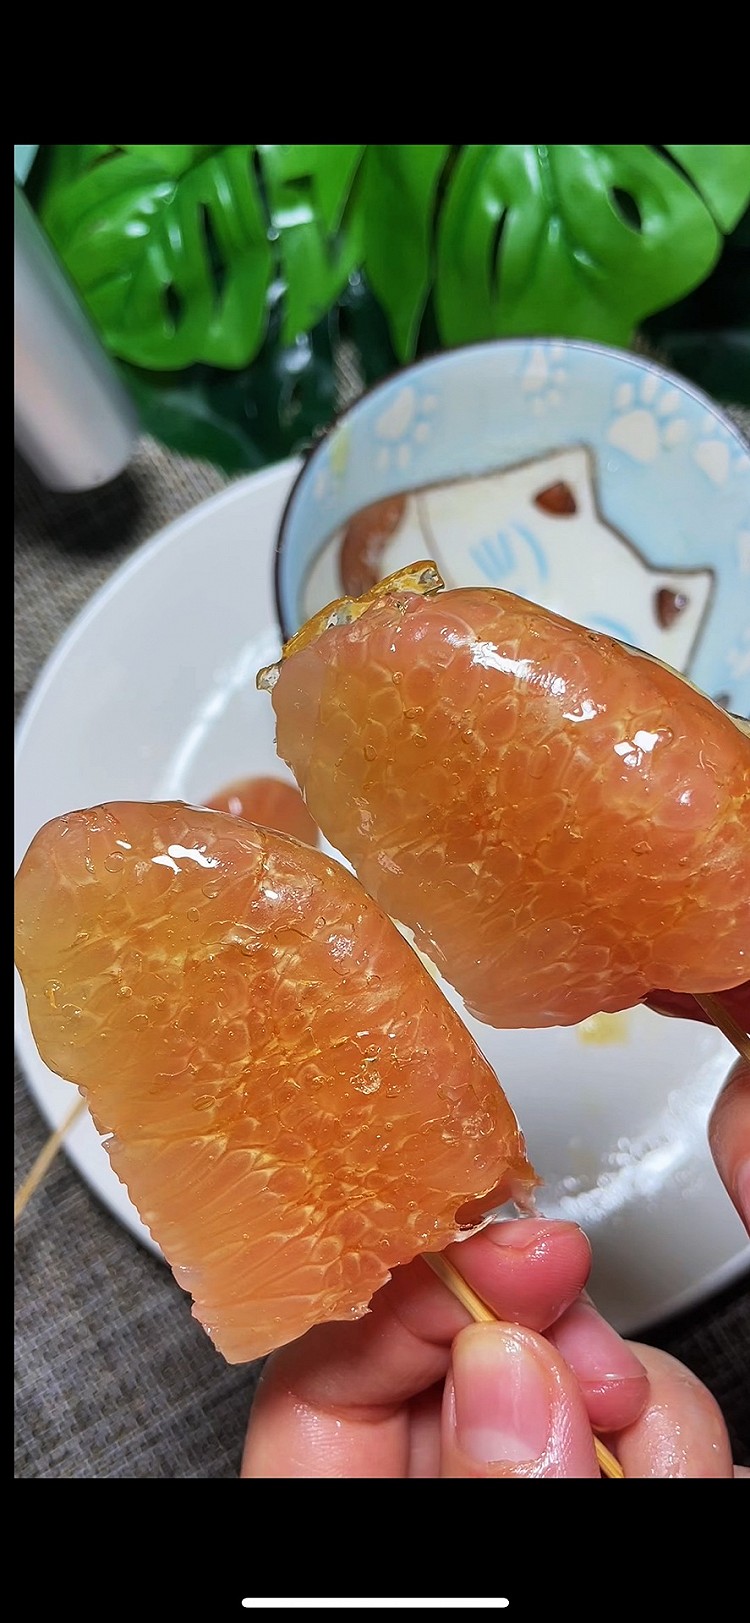 微波炉版的柚子糖墩 酸酸甜甜 一口下去满嘴柚子香的做法